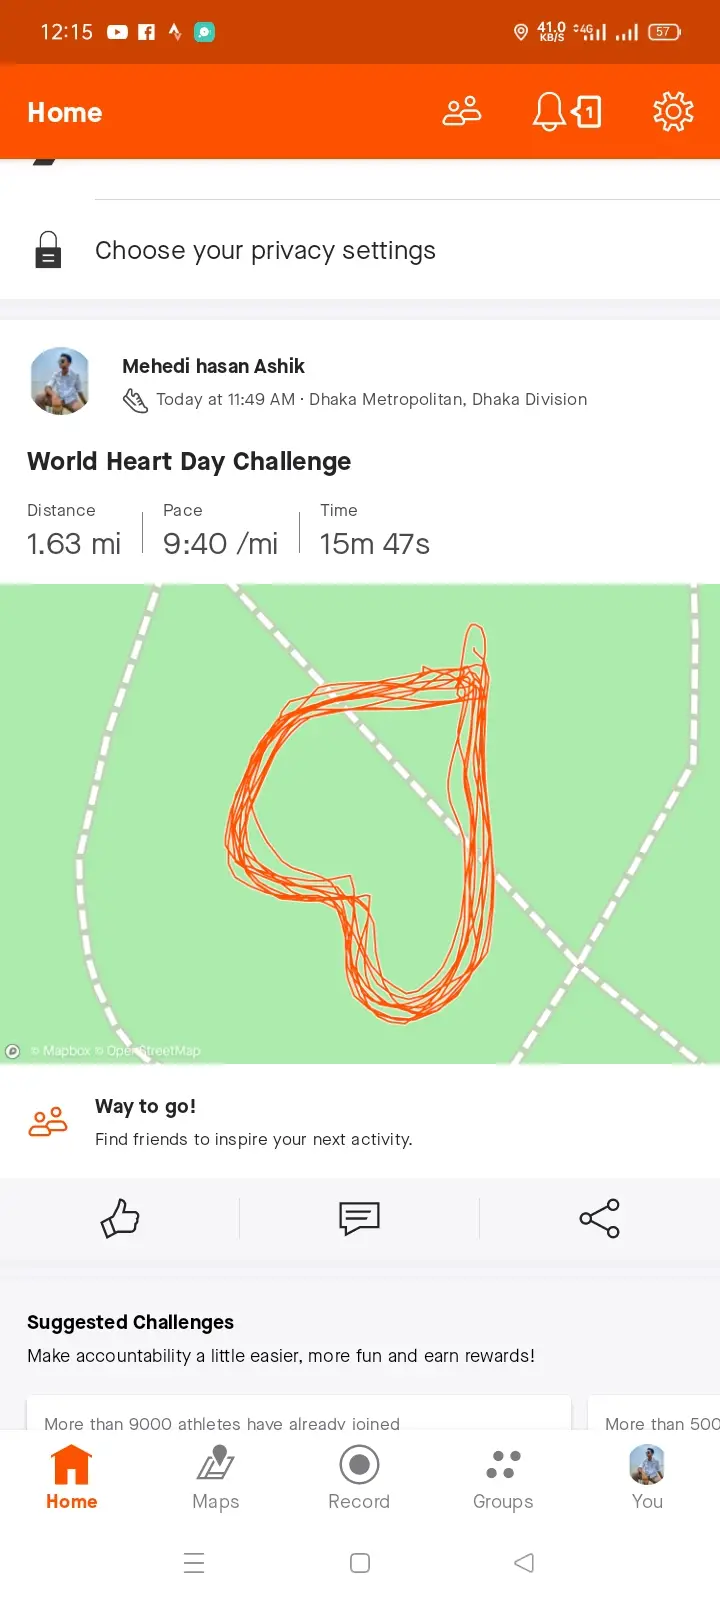 World Heart Day Challenge